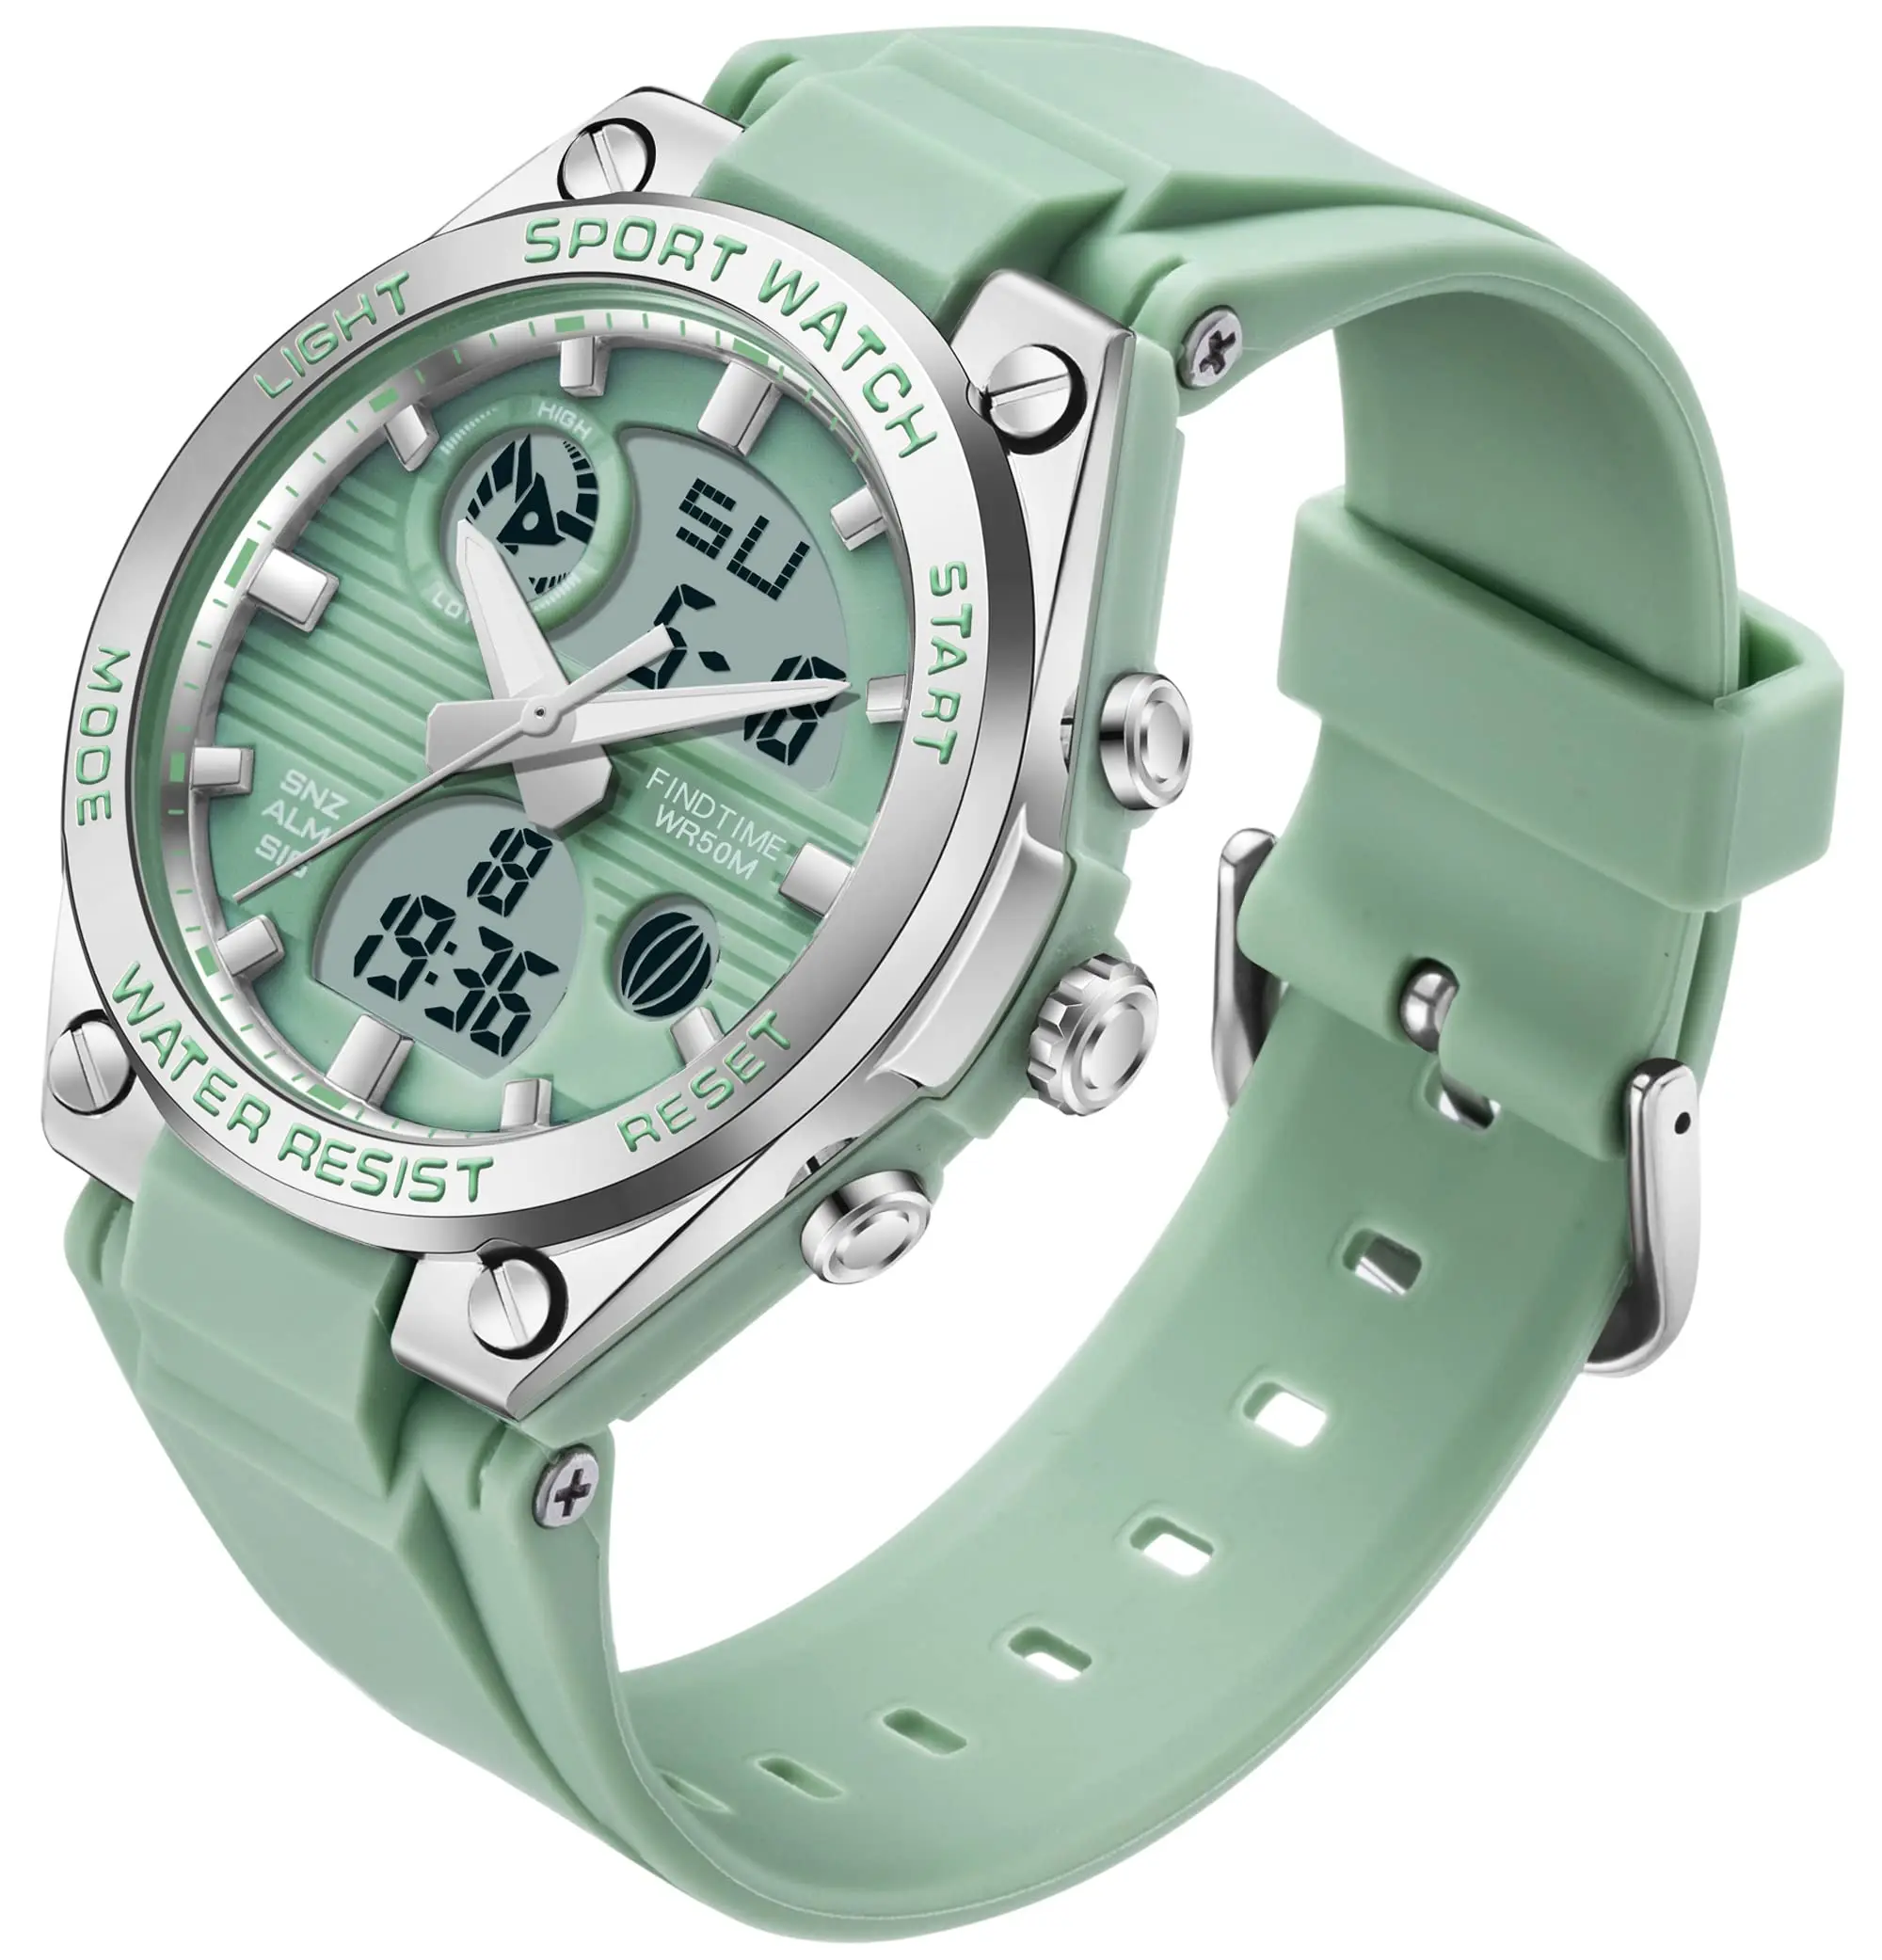 Relojes de pulsera para mujer, reloj deportivo digital para mujer,  resistente al agua, relojes deportivos con pantalla frontal grande,  retroiluminación LED, alarma, cronómetro, reloj de moda para mujer, blanco,  negro, rosa, verde